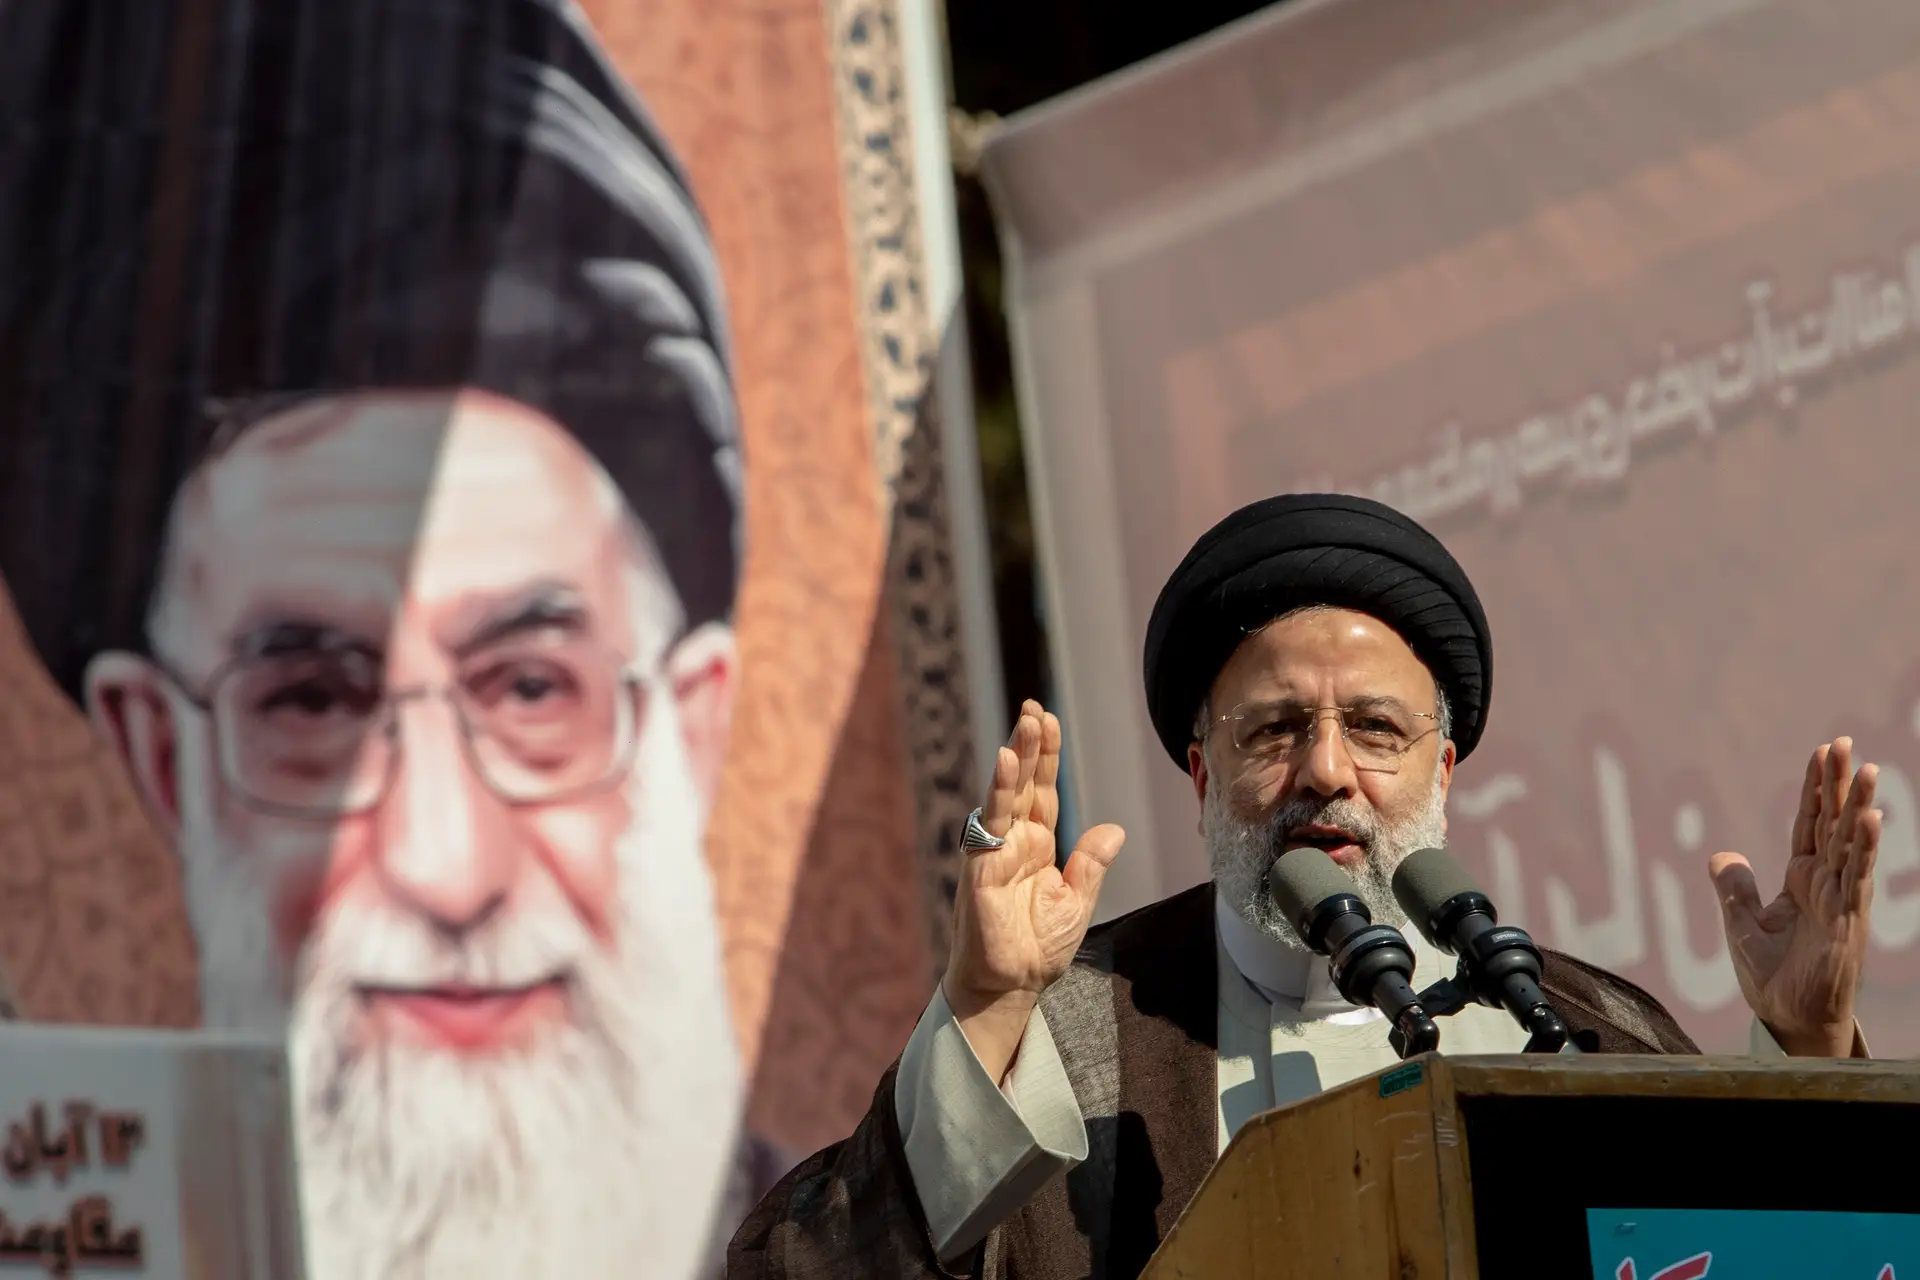 E depois de Raissi? "Nem o Presidente mais reformista seria capaz de mudar a abordagem do Irão em relação à Faixa de Gaza e ao Hezbollah”